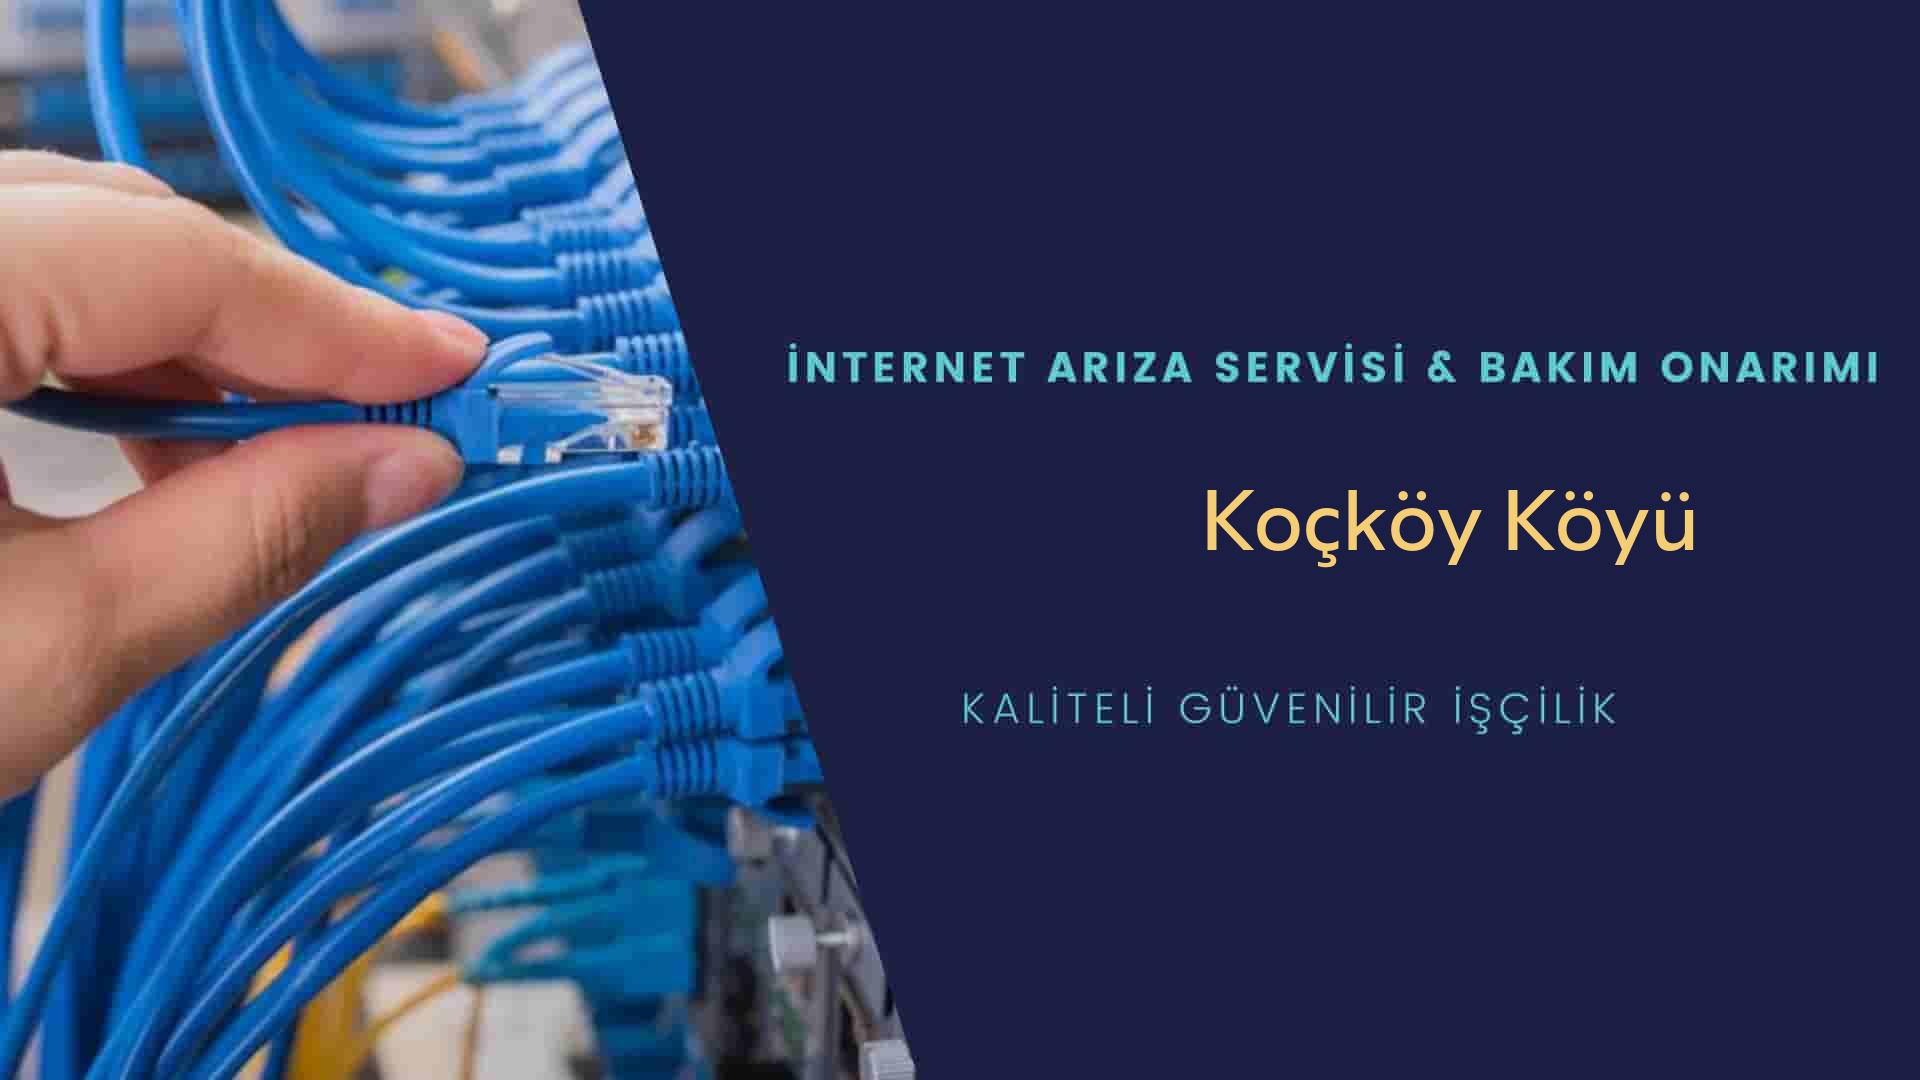 Koçköy Köyü internet kablosu çekimi yapan yerler veya elektrikçiler mi? arıyorsunuz doğru yerdesiniz o zaman sizlere 7/24 yardımcı olacak profesyonel ustalarımız bir telefon kadar yakındır size.